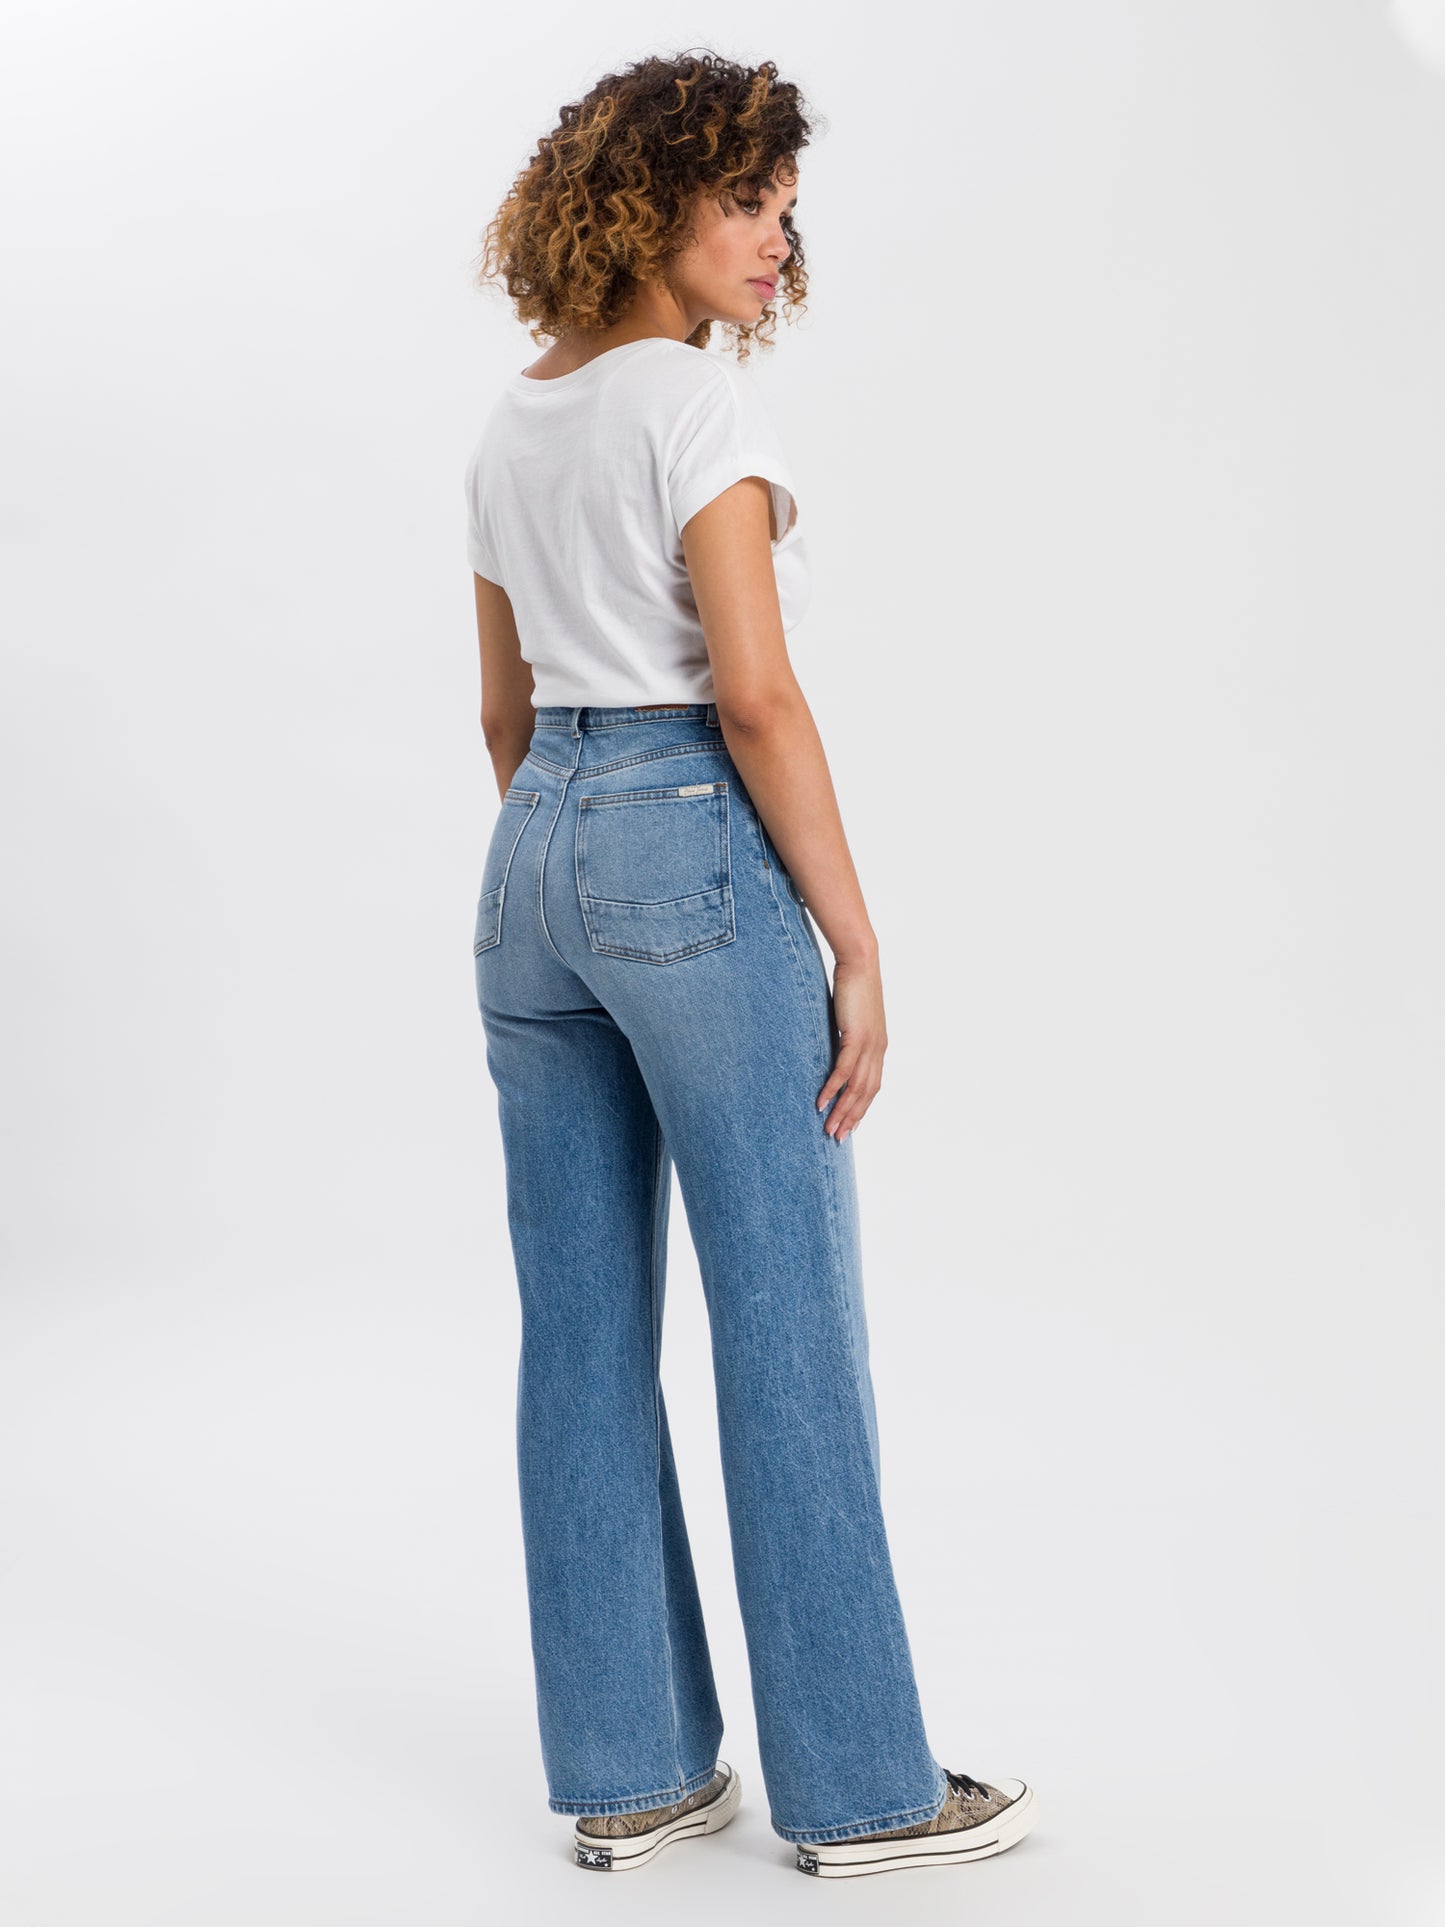 Women's jeans high waist flare leg medium blue